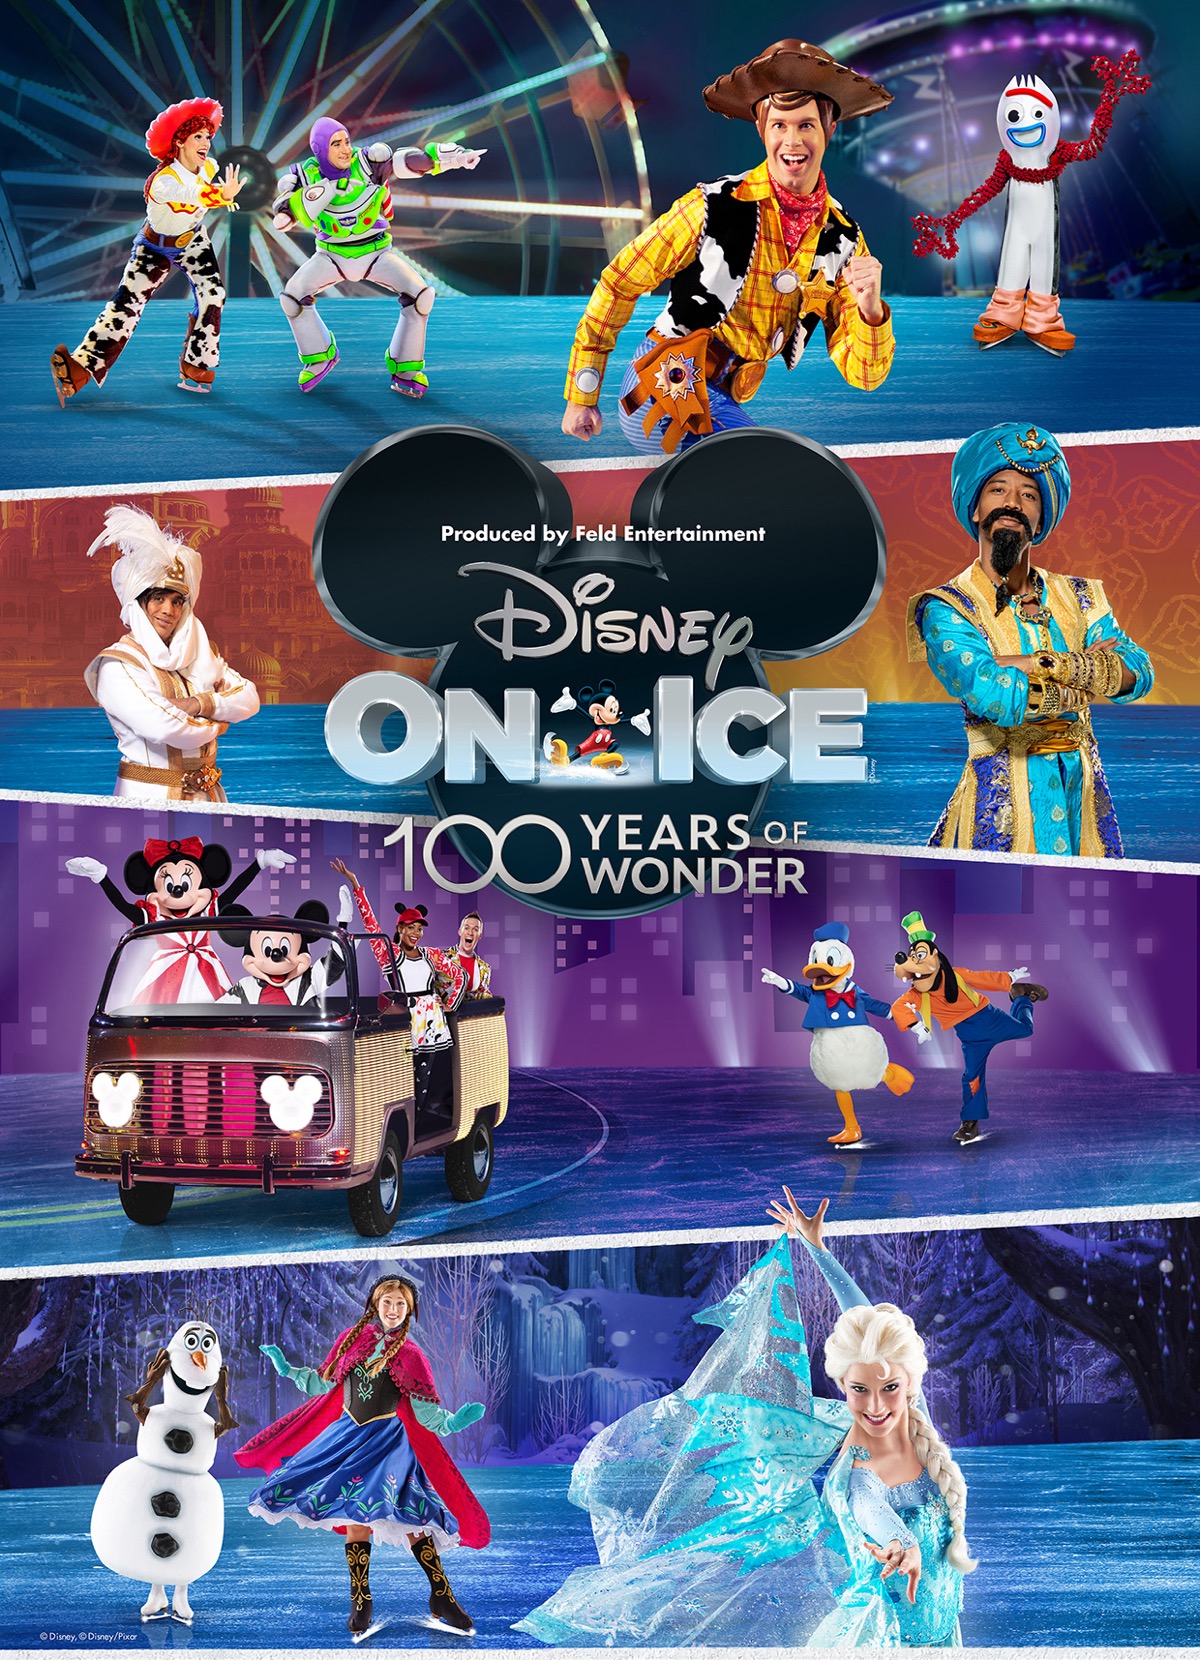 『ディズニー・オン・アイス 100 Years of Wonder』の日本公演が開幕しました！9月まで全国10都市で開催